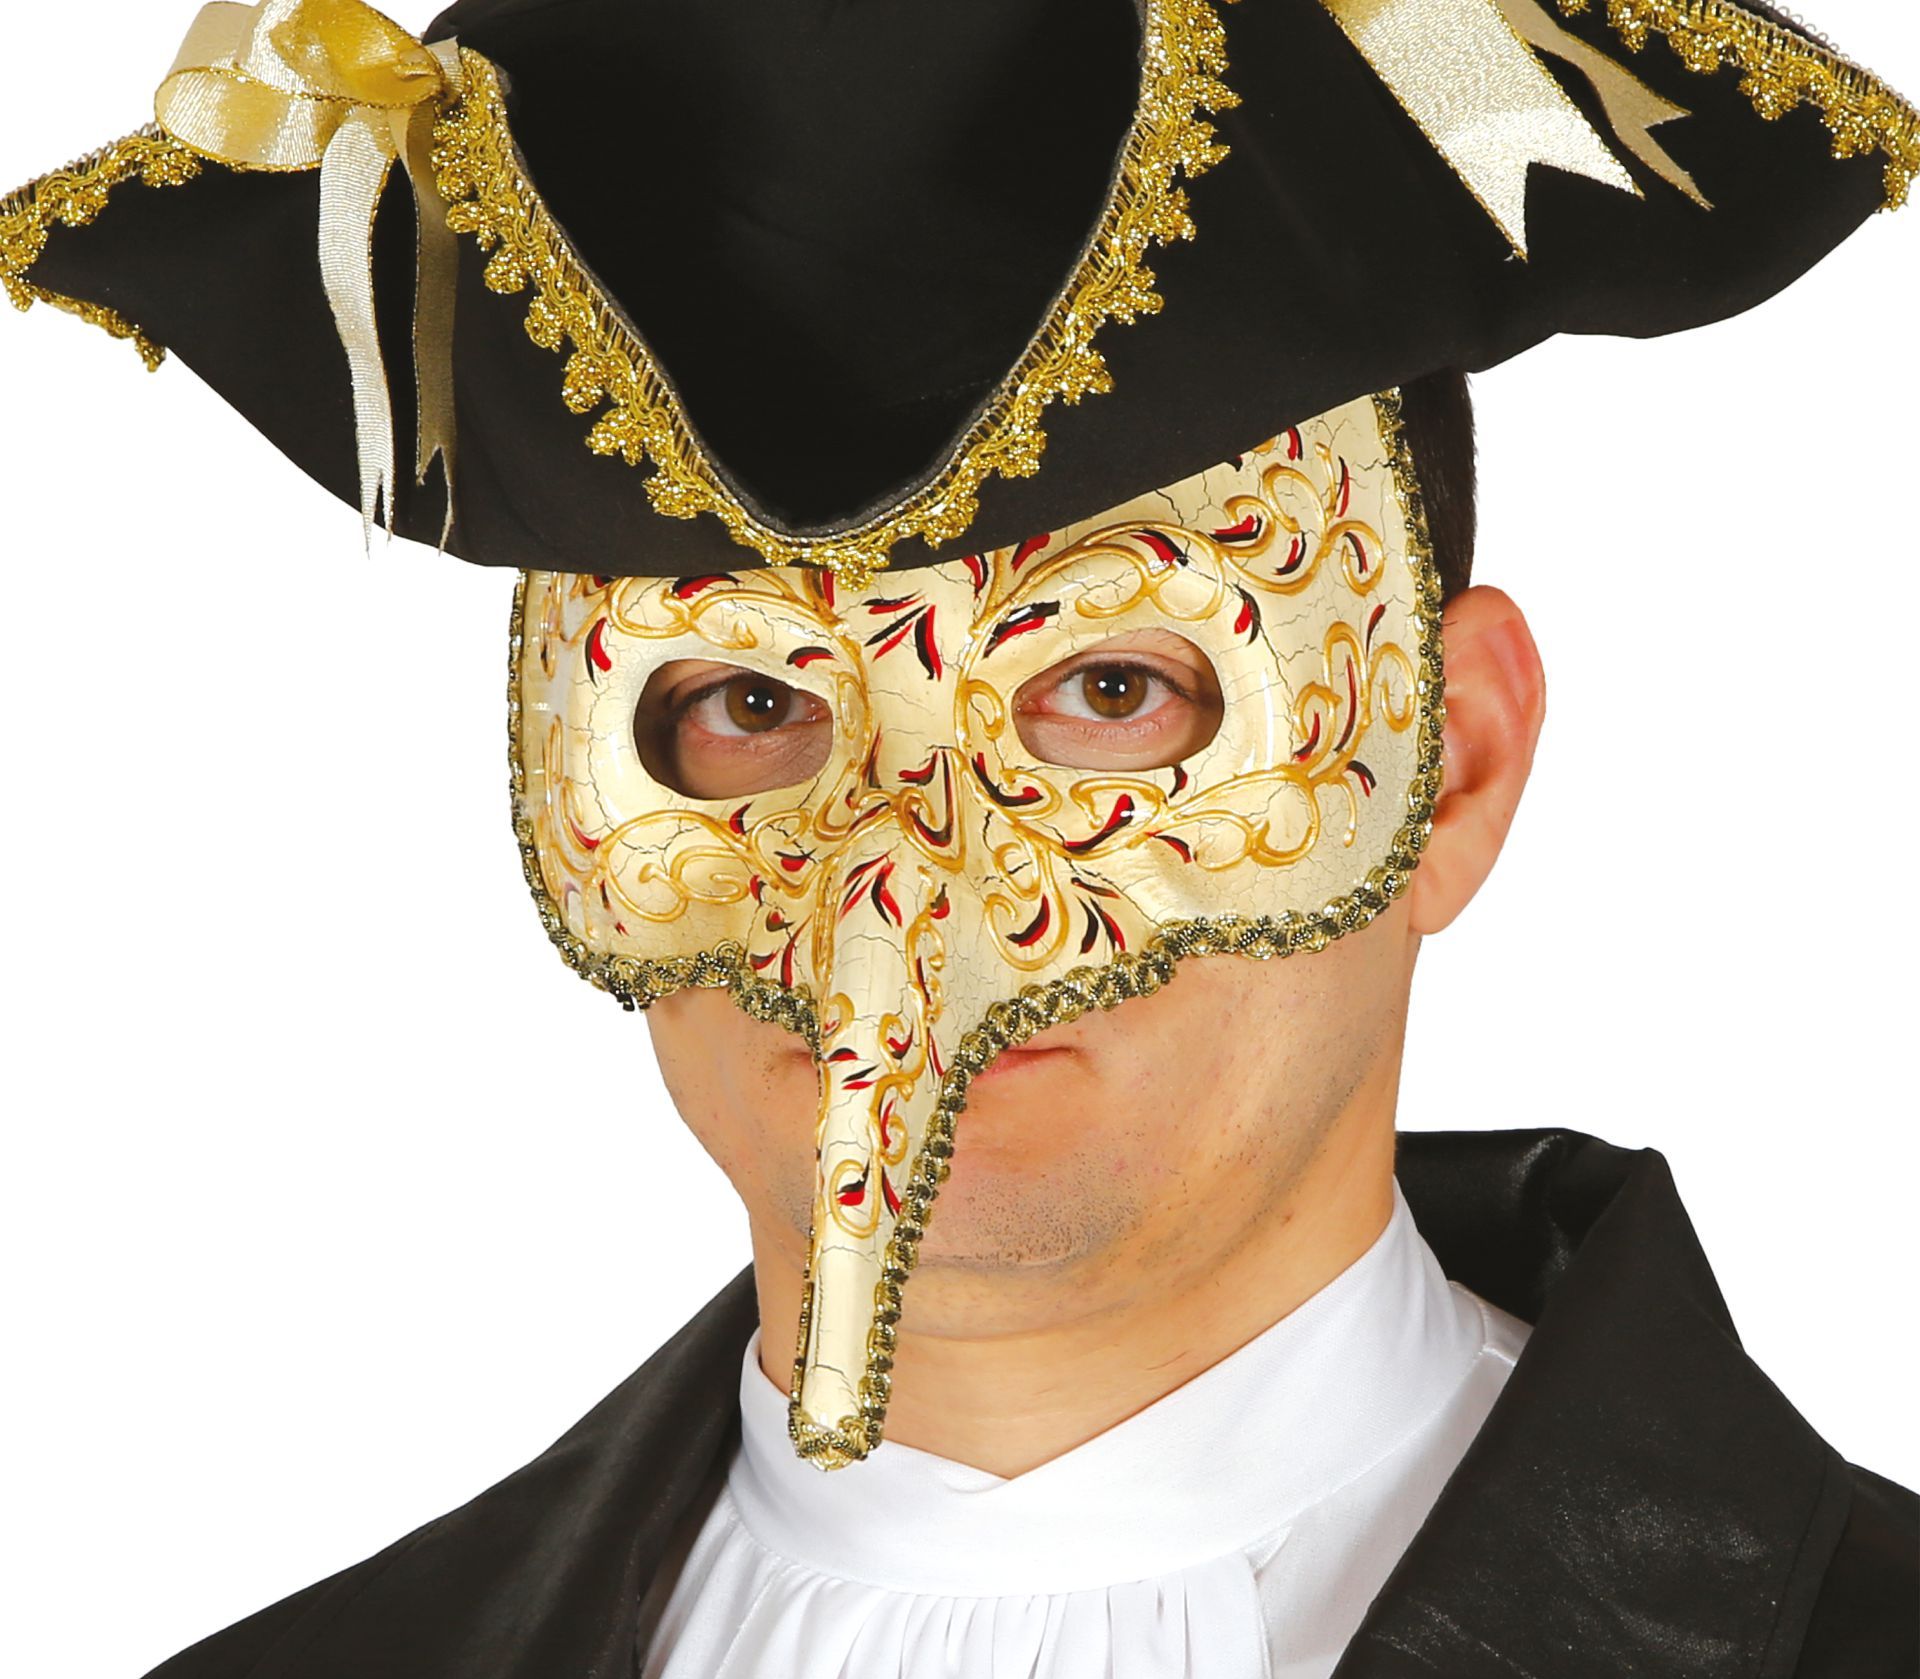 Grootte Uluru applaus Gouden Venetiaans masker met neus | Carnavalskleding.nl